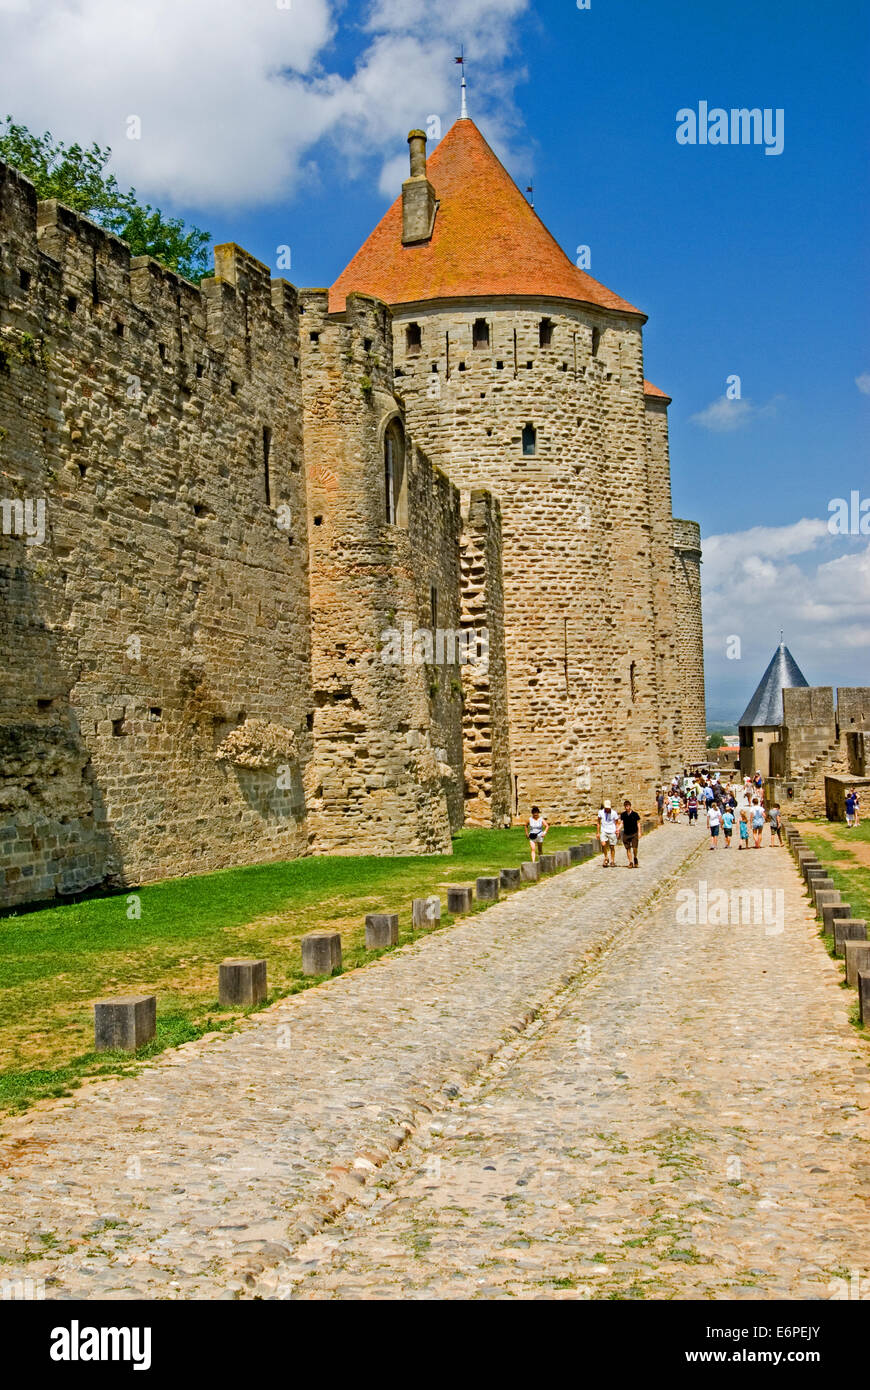 Carcassonne ist eines der Ikonischen Südwesten Frankreichs Städte und ein UNESCO-Weltkulturerbe, ist es ummauerten Stadt Touristen das ganze Jahr über. Stockfoto